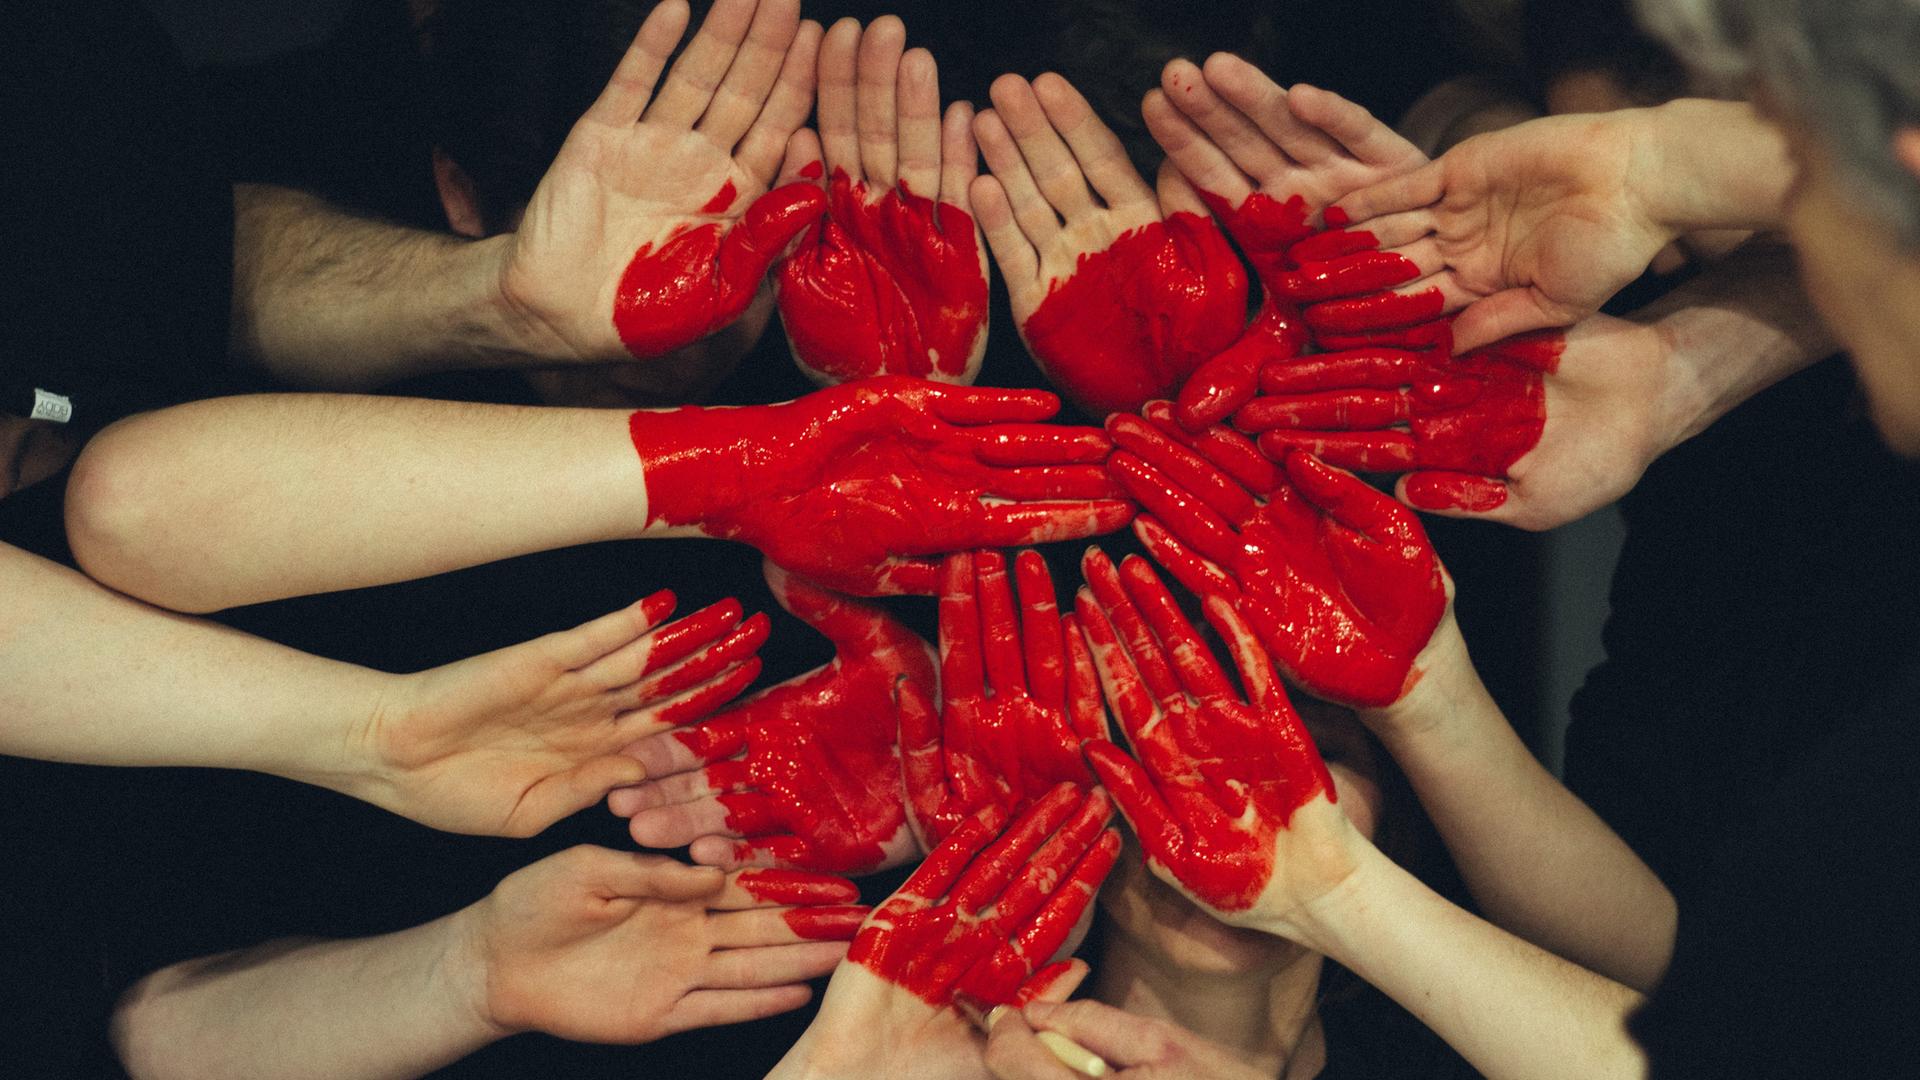 Auf mehrere Hände gemalte rote Farbe stellt ein Herz dar. (Symbolfoto)